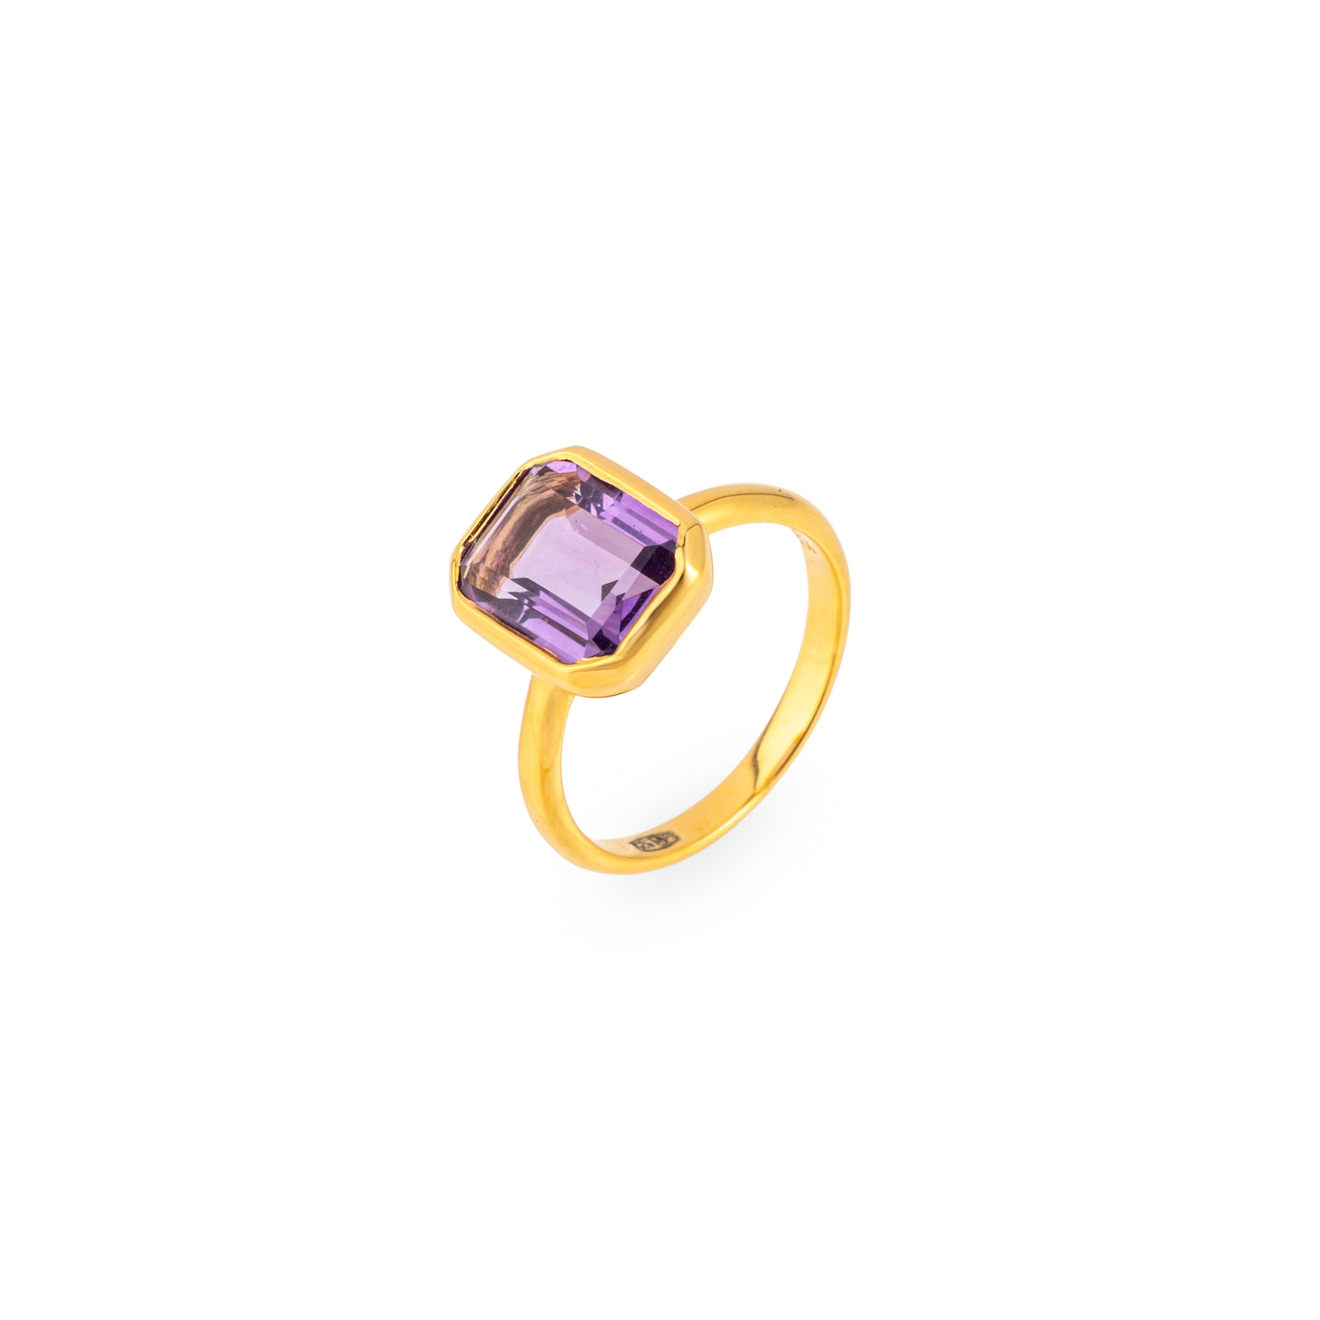 Wisteria Gems Позолоченное кольцо с большим прямоугольным аметистом цена и фото